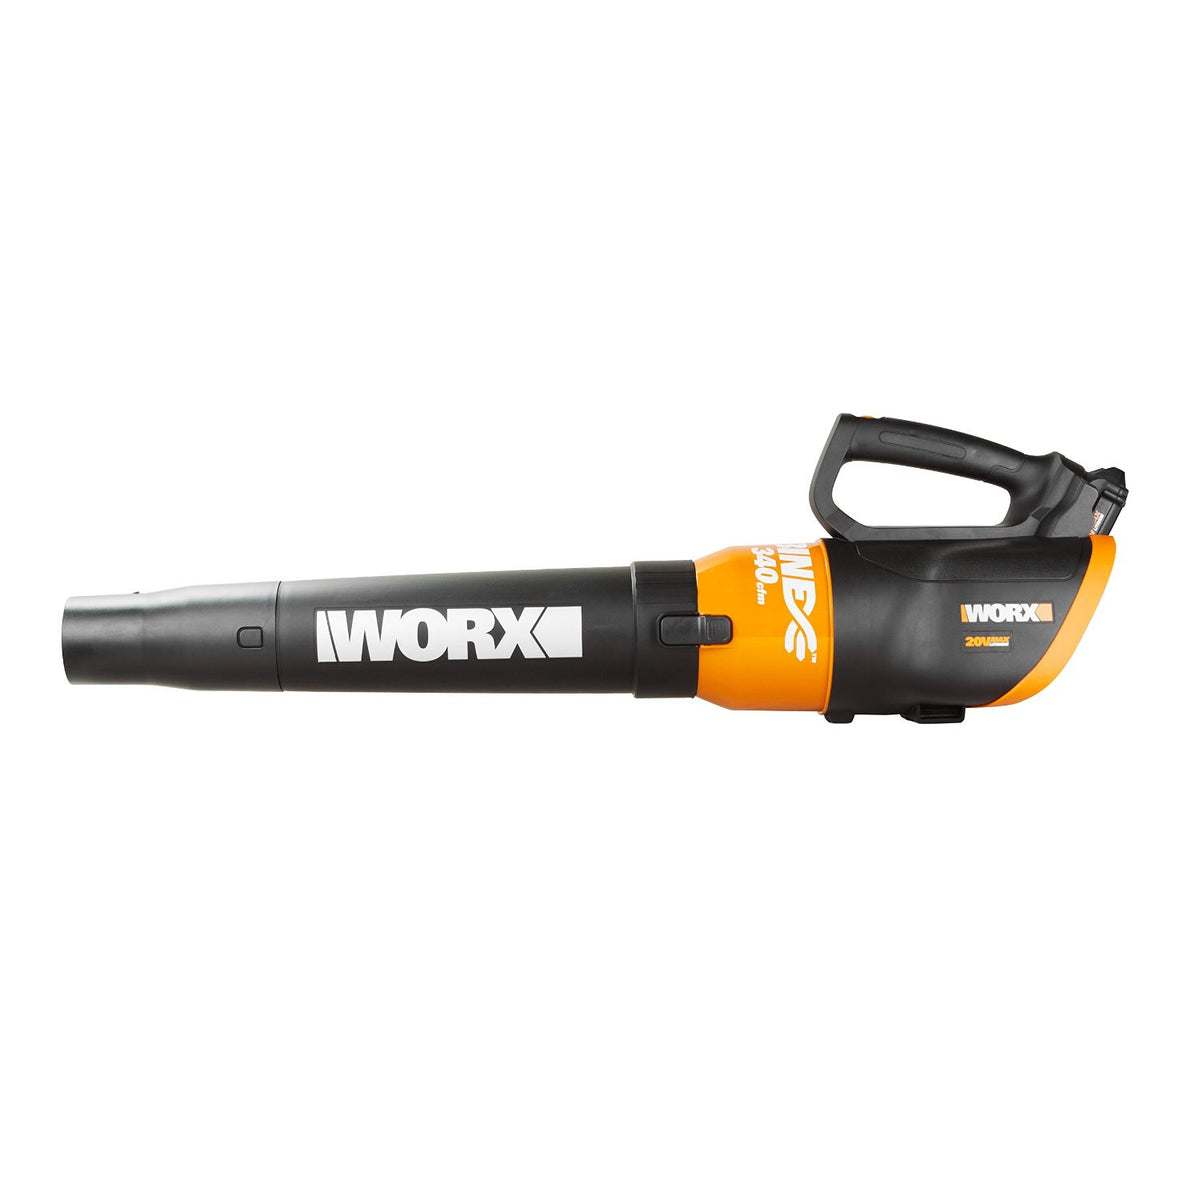 Worx WG547/WG546 Leaf Blower, 20 Volt